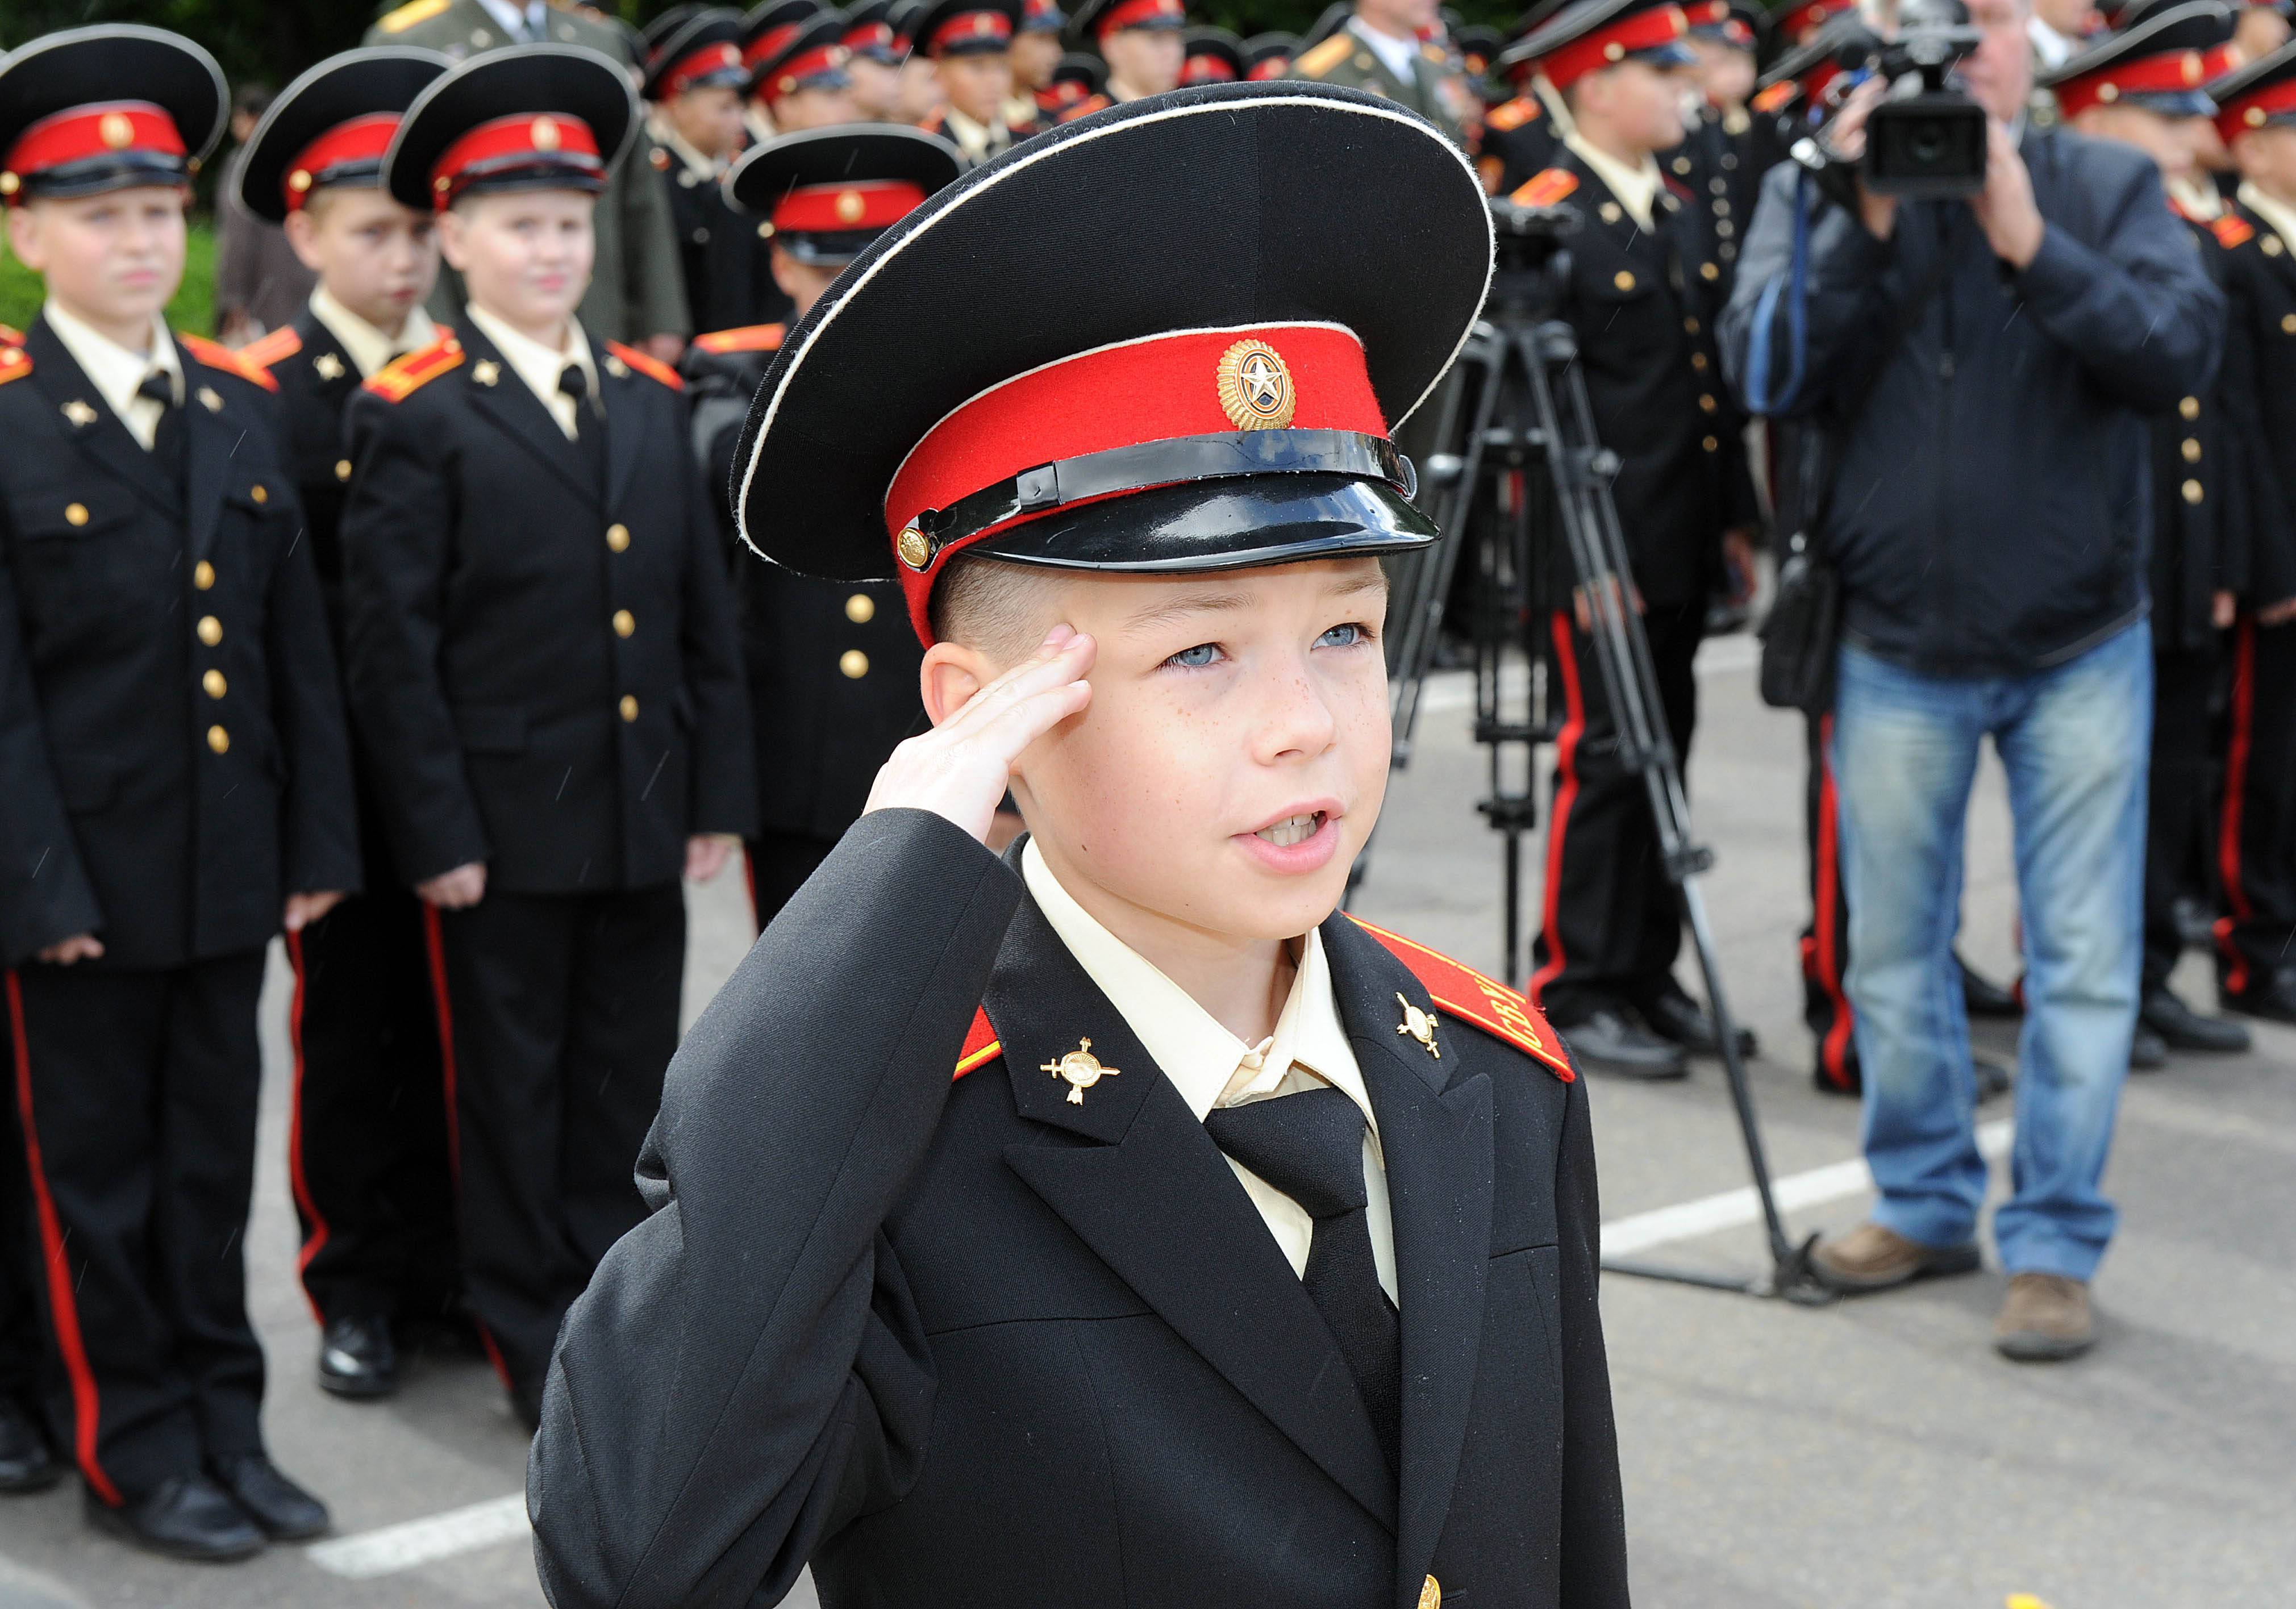 Рейтинг военных училищ россии 2021 года — полный список лучших после 11, 9 и 4 классов